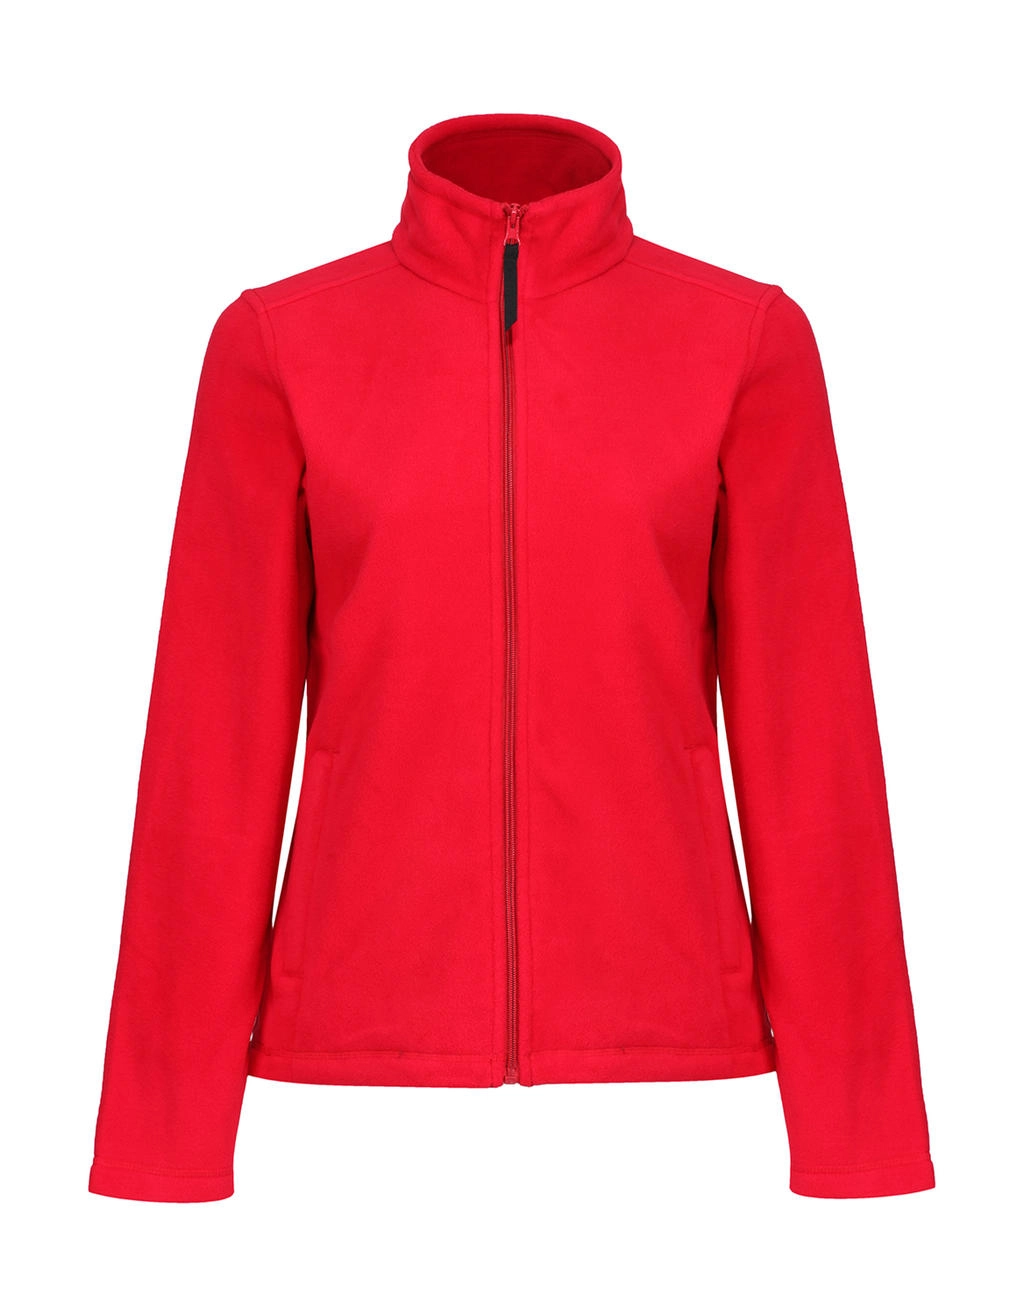 Women`s Micro Full Zip Fleece zum Besticken und Bedrucken in der Farbe Classic Red mit Ihren Logo, Schriftzug oder Motiv.